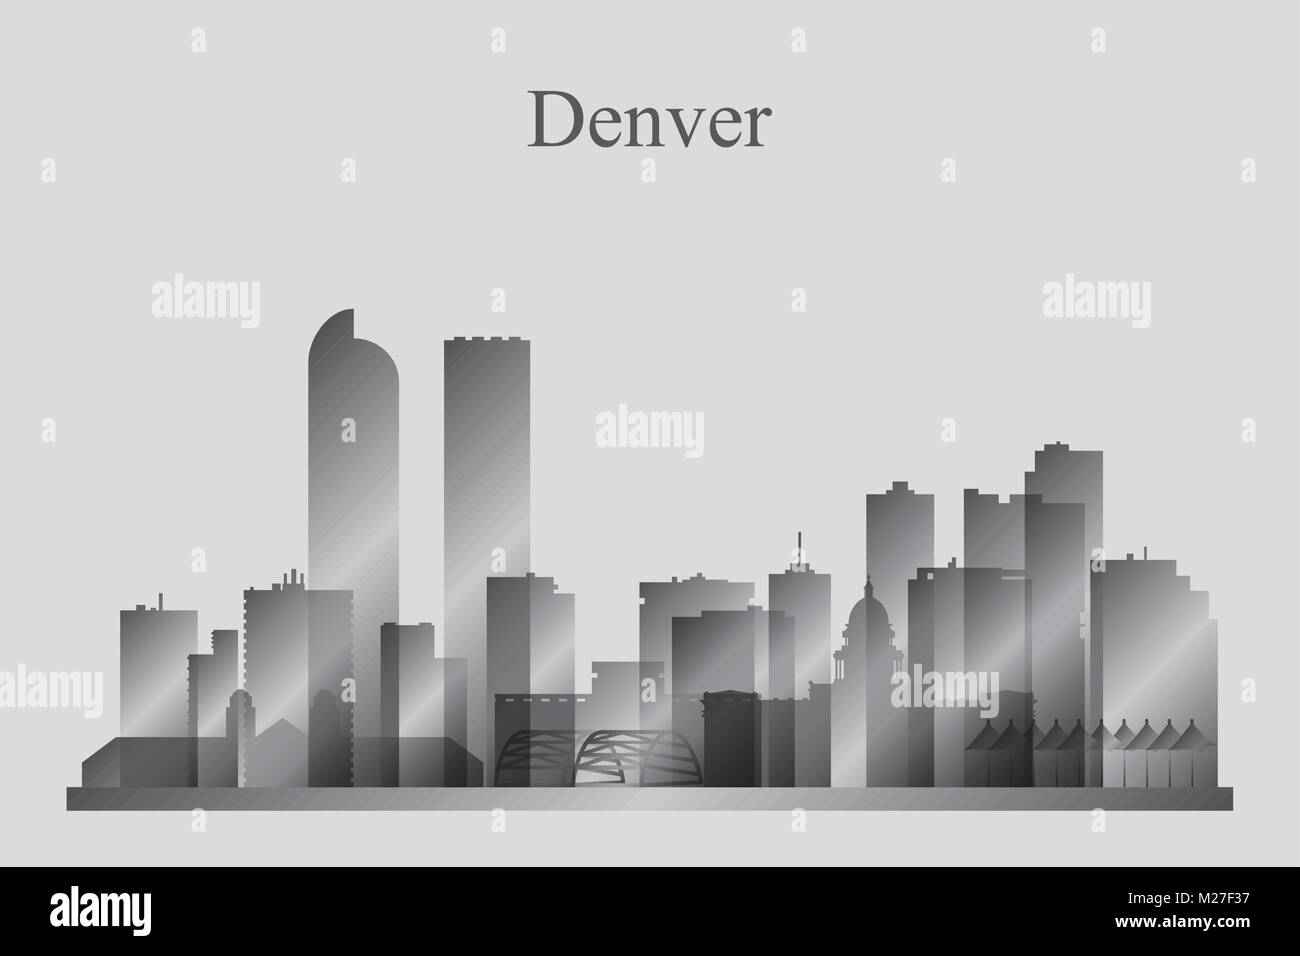 Denver Stadt Skyline Silhouette in Graustufen, Vektor-illustration Stock Vektor